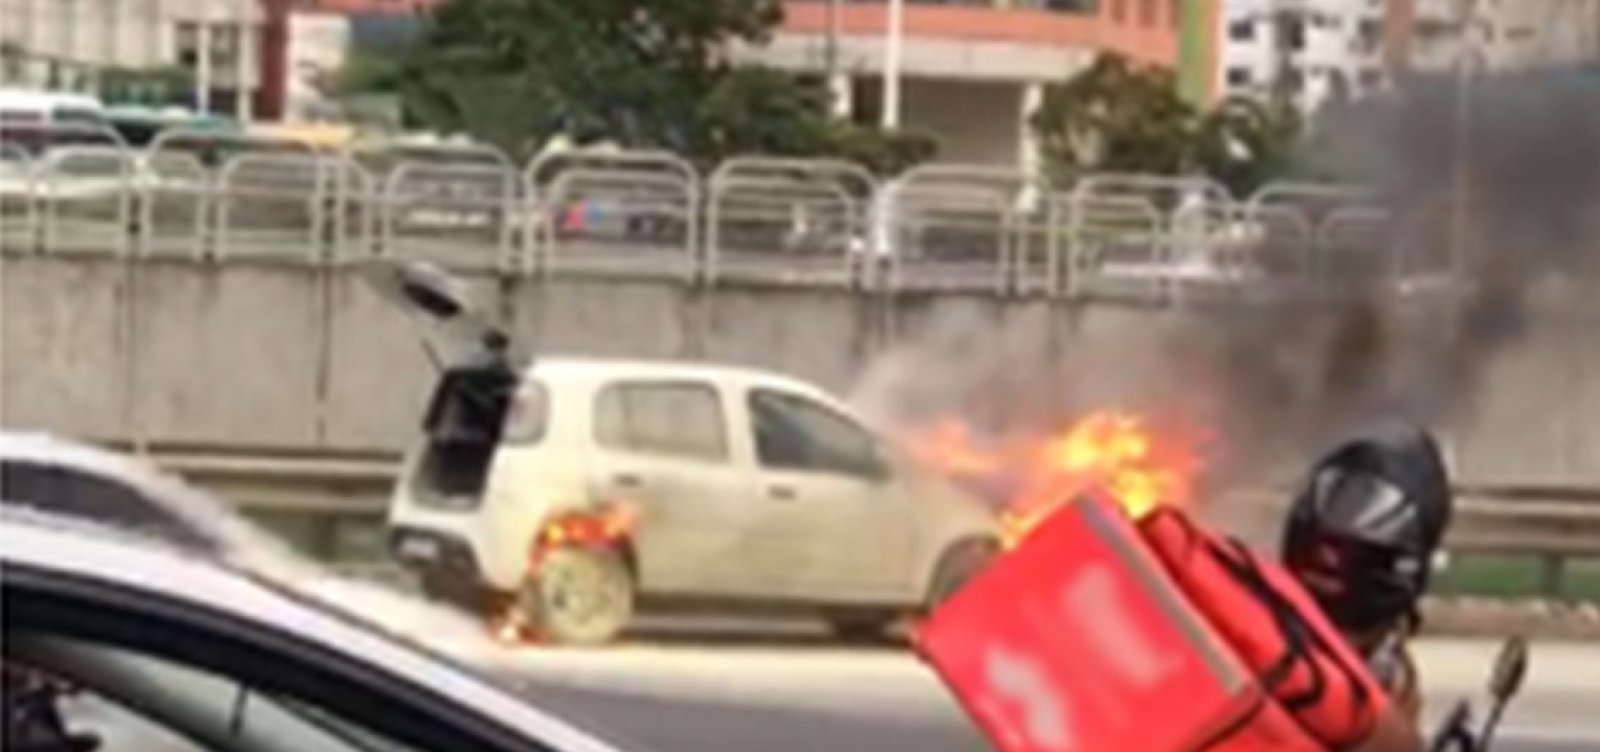 Carro pega fogo na Avenida Paralela; situação não deixou feridos